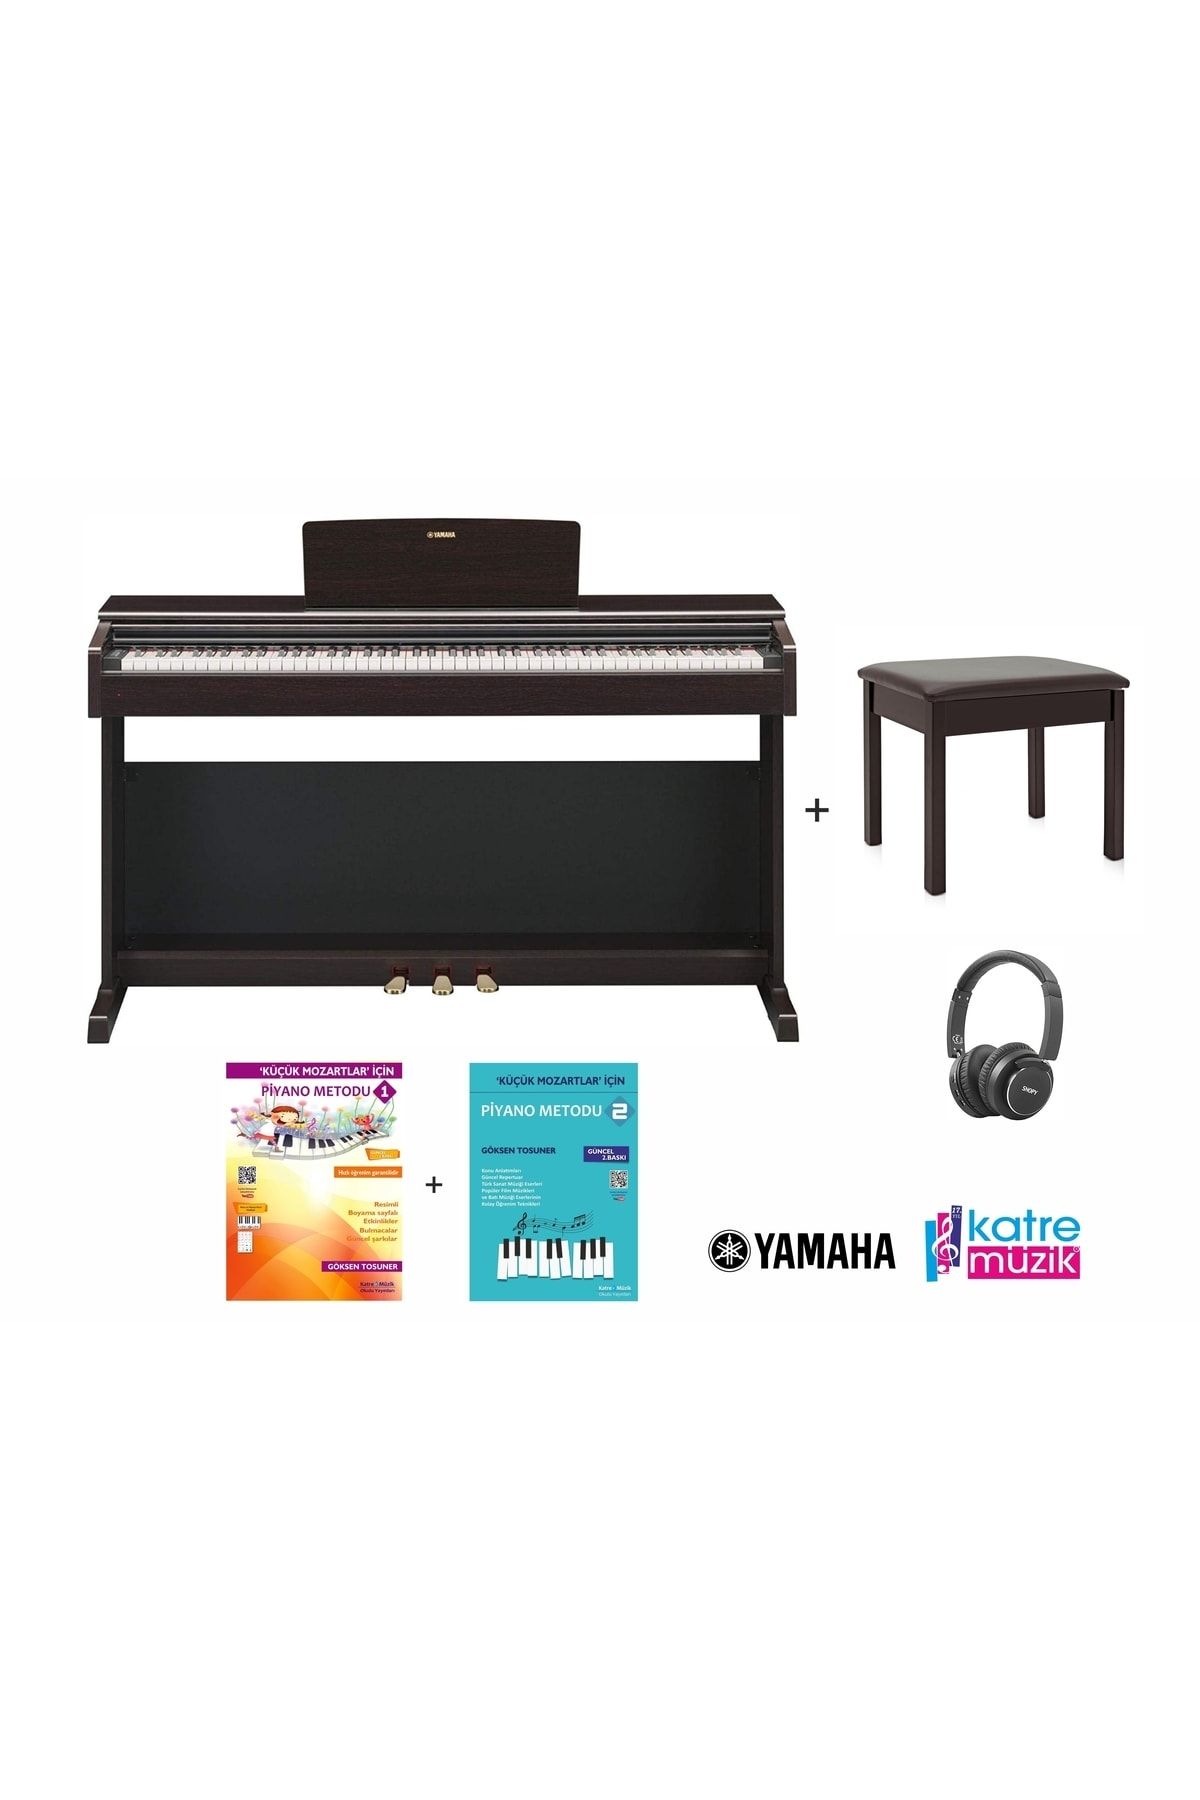 Yamaha Ydp145r Kahverengi Dijital Piyano Seti (TABURE-KULAKLIK-PİYANO METODLARI HEDİYE-KATRE MÜZİK)